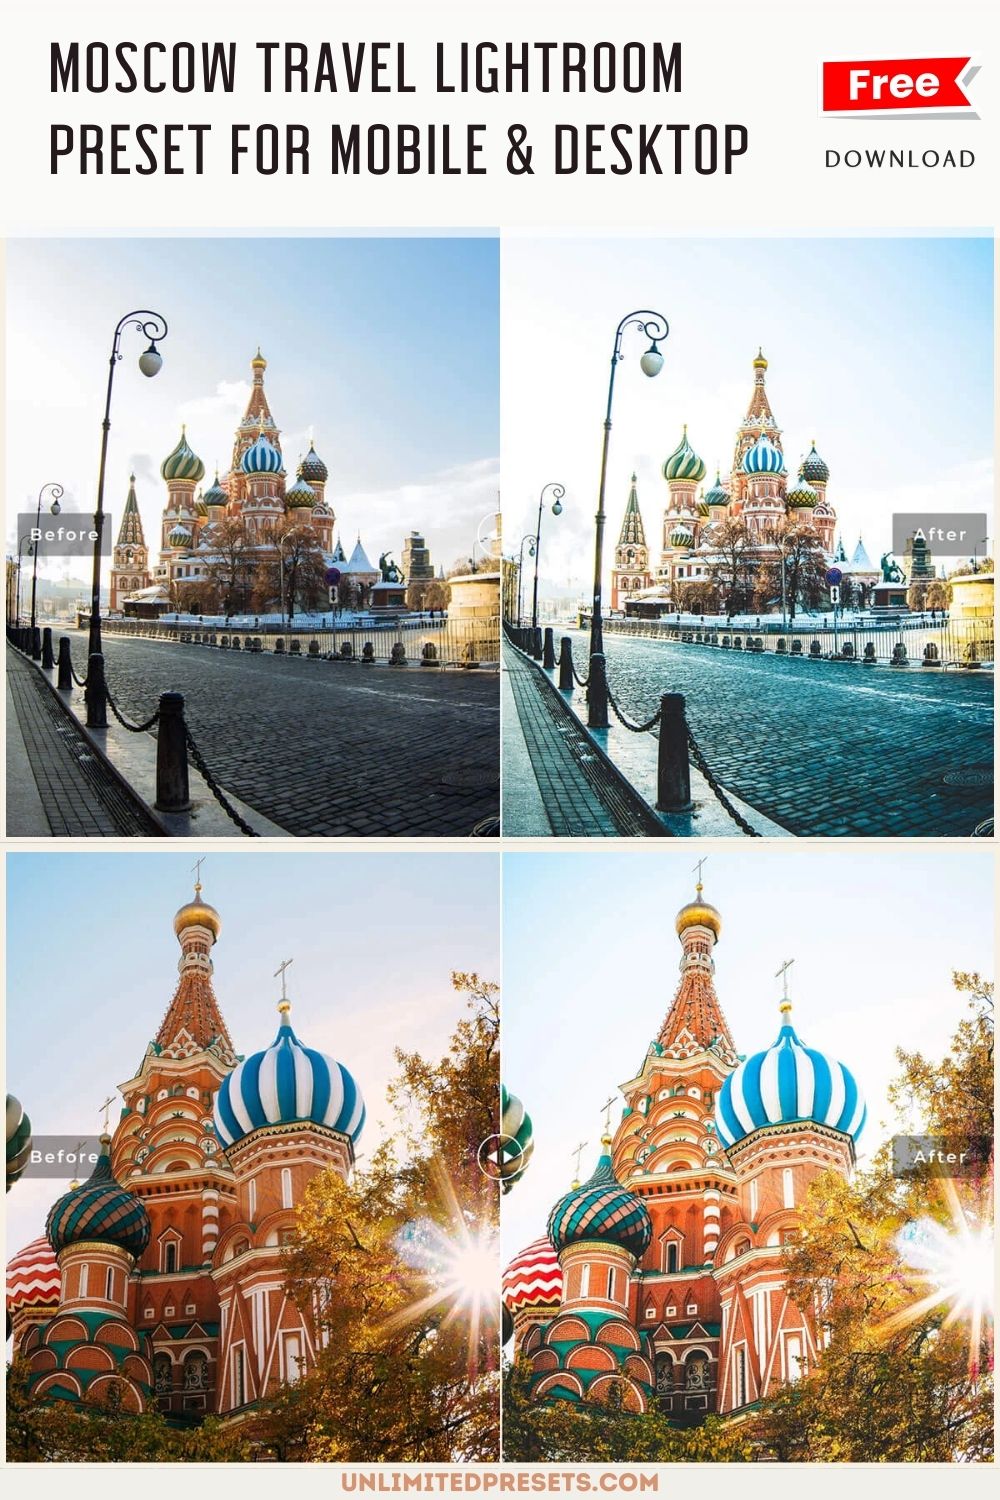 Moscow Travel Lightroom Preset For Mobile & Desktop